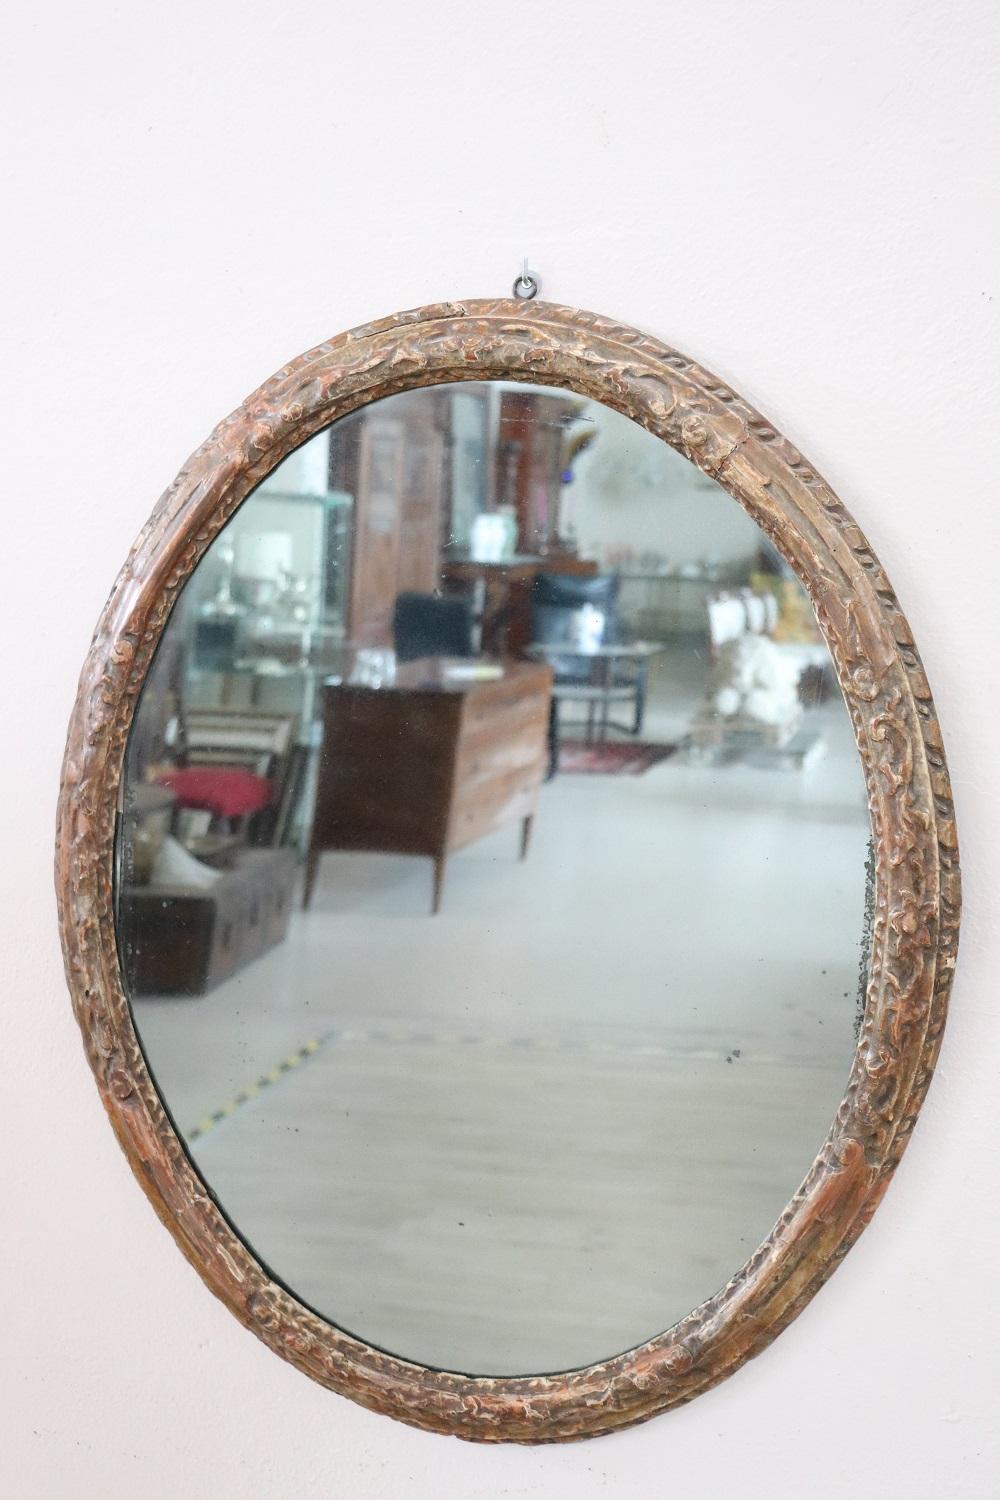 Magnifique et élégant miroir mural ovale ancien. Italien Louis XIV années 1680. Bois sculpté à la main avec des tourbillons et des boucles d'une grande finesse et richesse. Miroir ancien au mercure. En bon état d'antiquité.